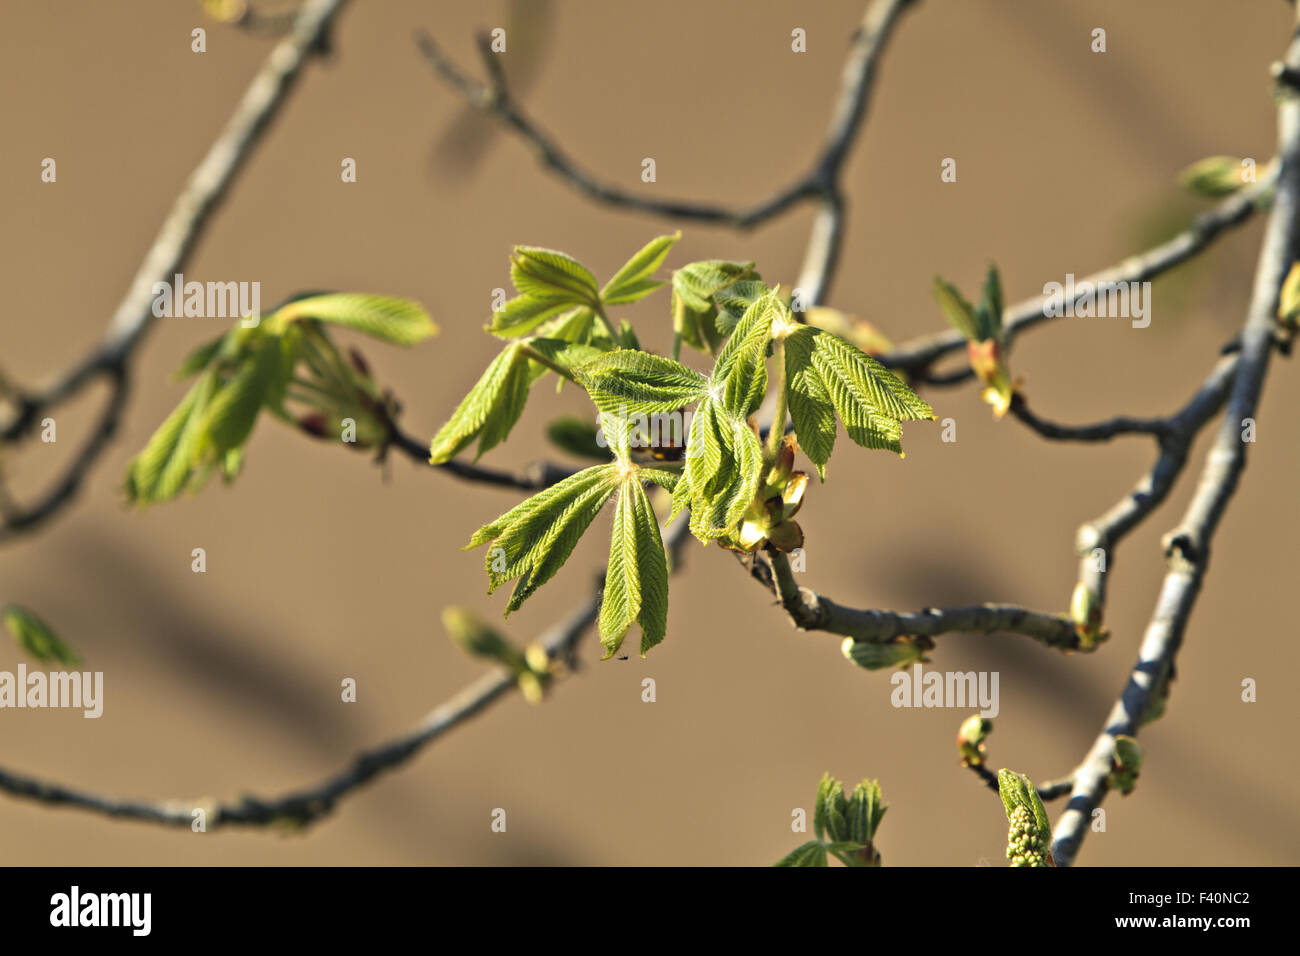 horse chestnut (Aesculus hippocastanum) Stock Photo